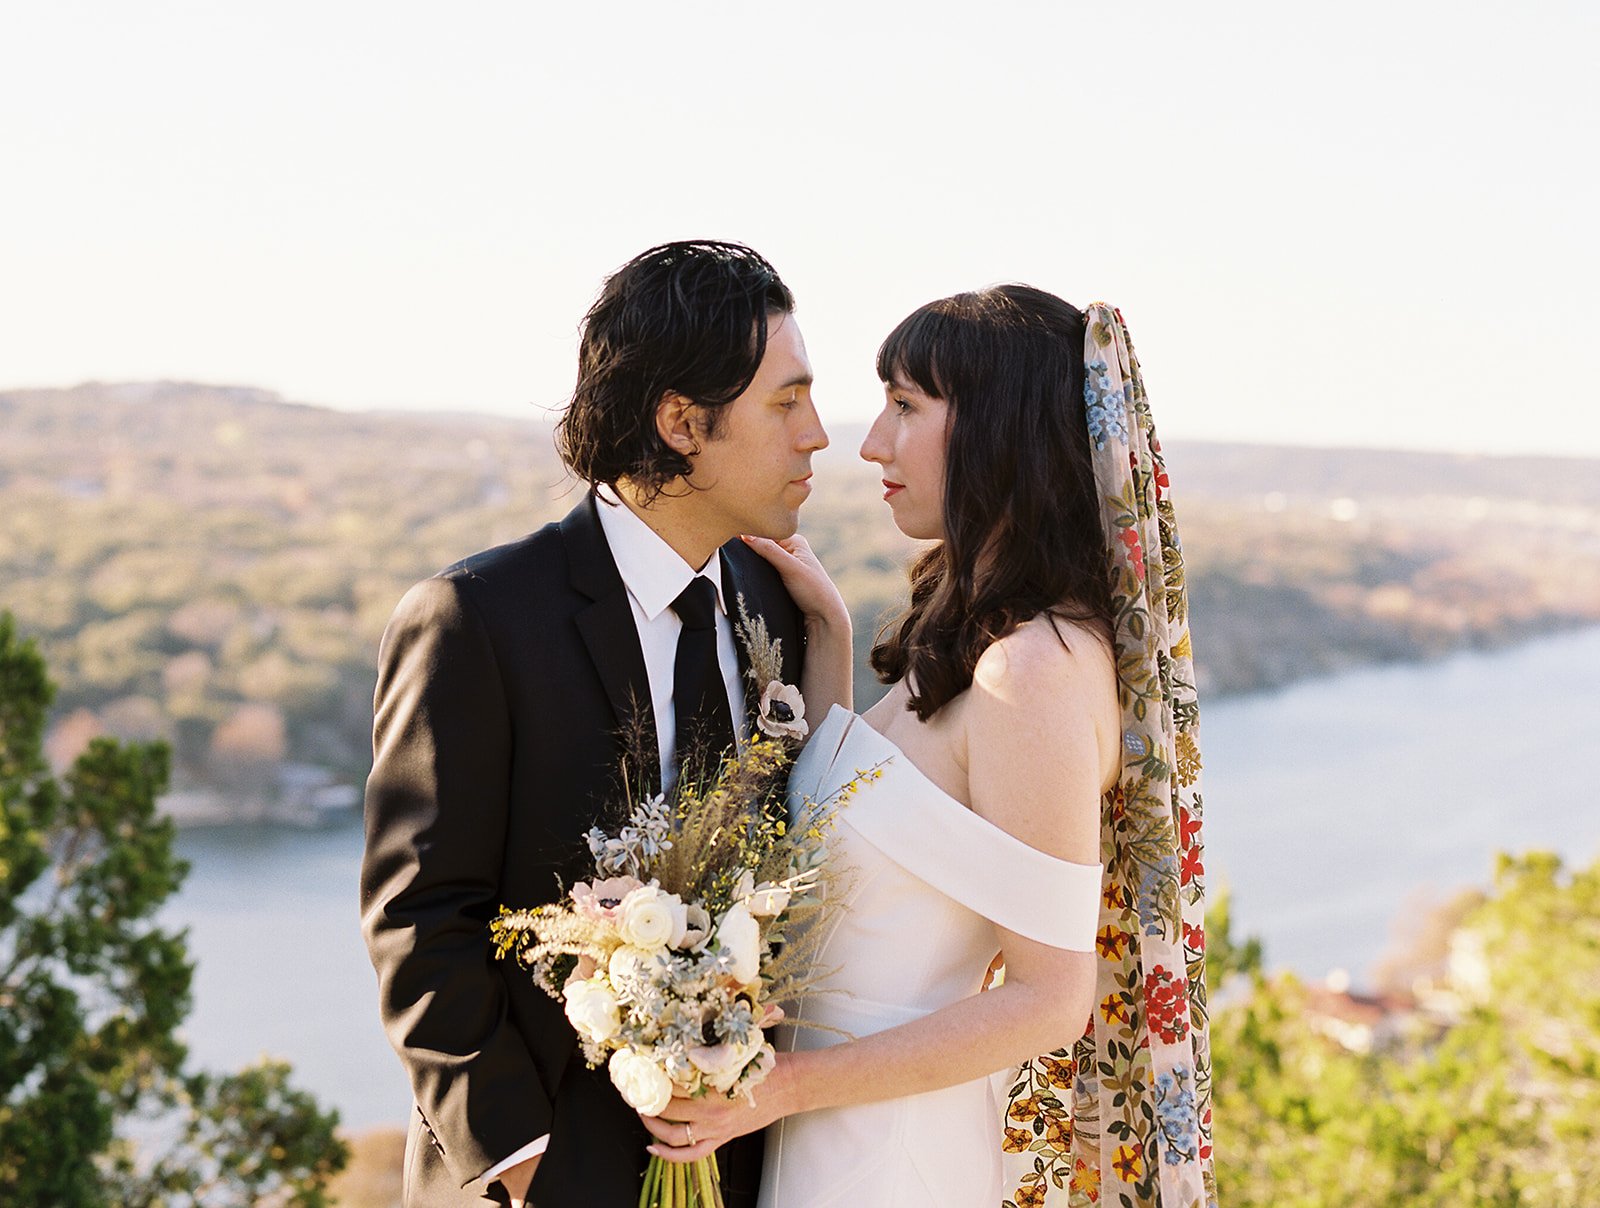 Best-Austin-Wedding-Photographers-Elopement-Film-35mm-Asheville-Santa-Barbara-Laguna-Gloria-24.jpg